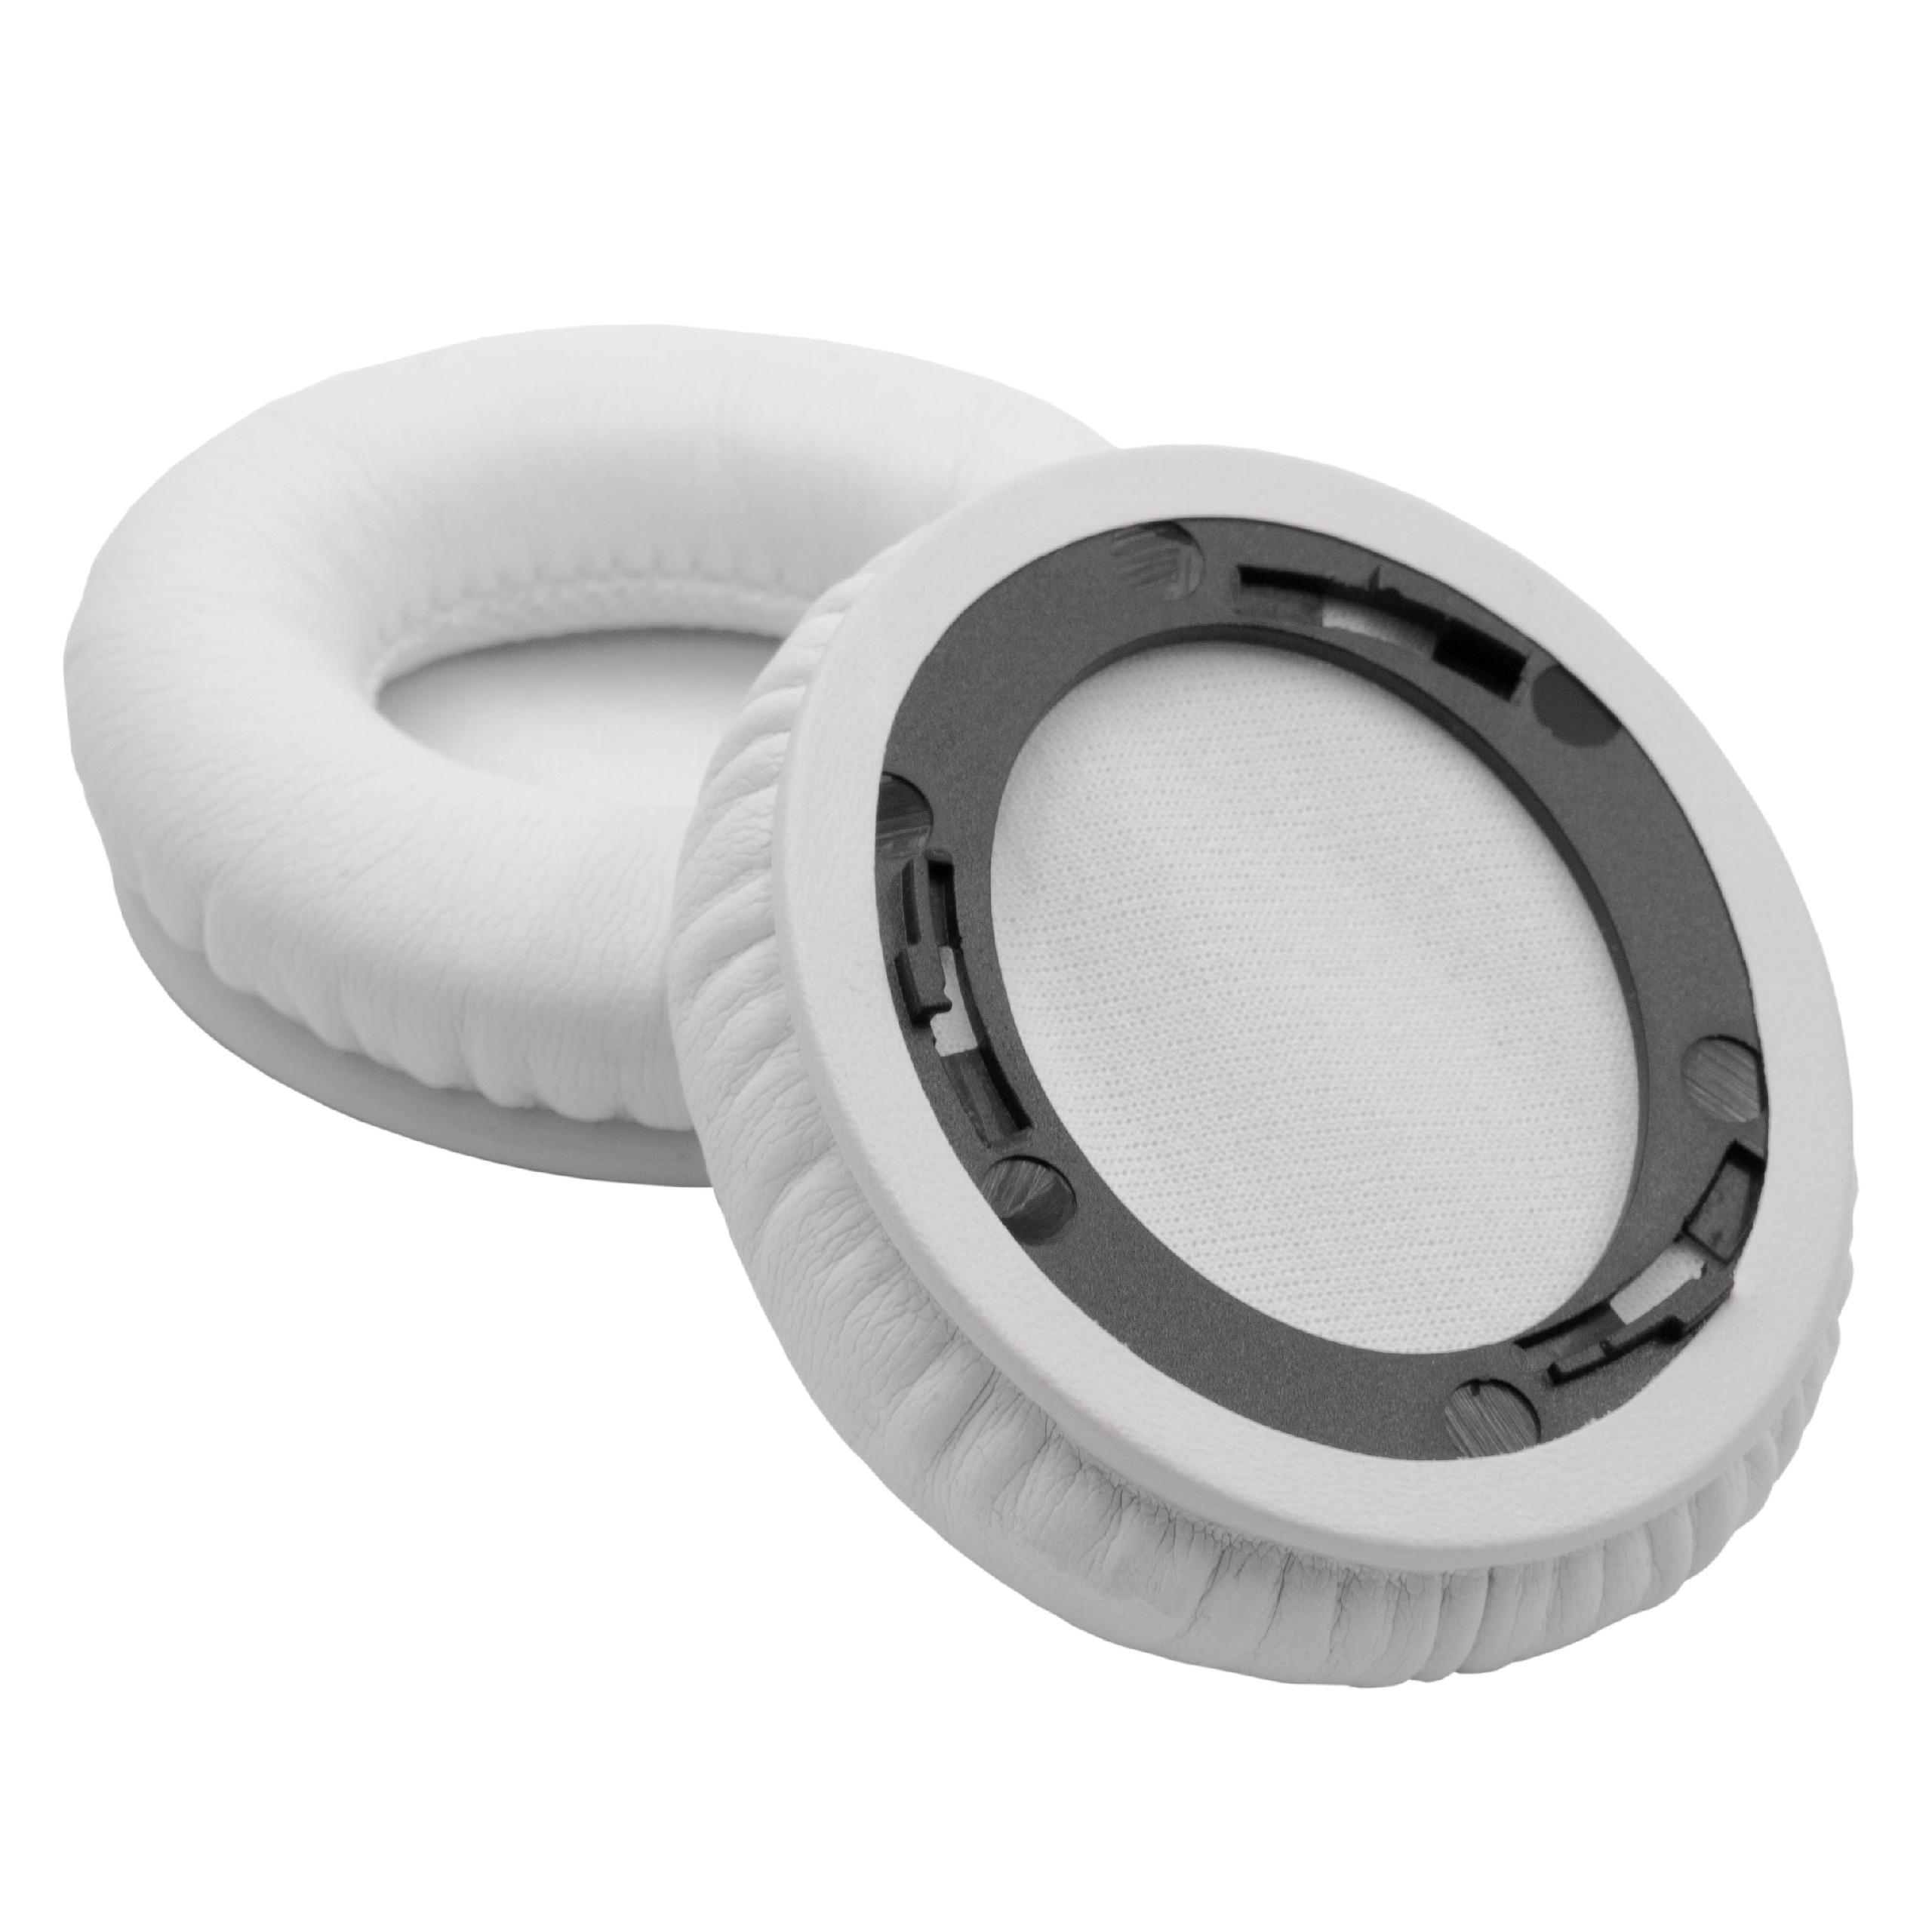 Poduszki do słuchawek Beats by Dr. Dre Solo HD 1 - pady, grub. 14 mm, biały